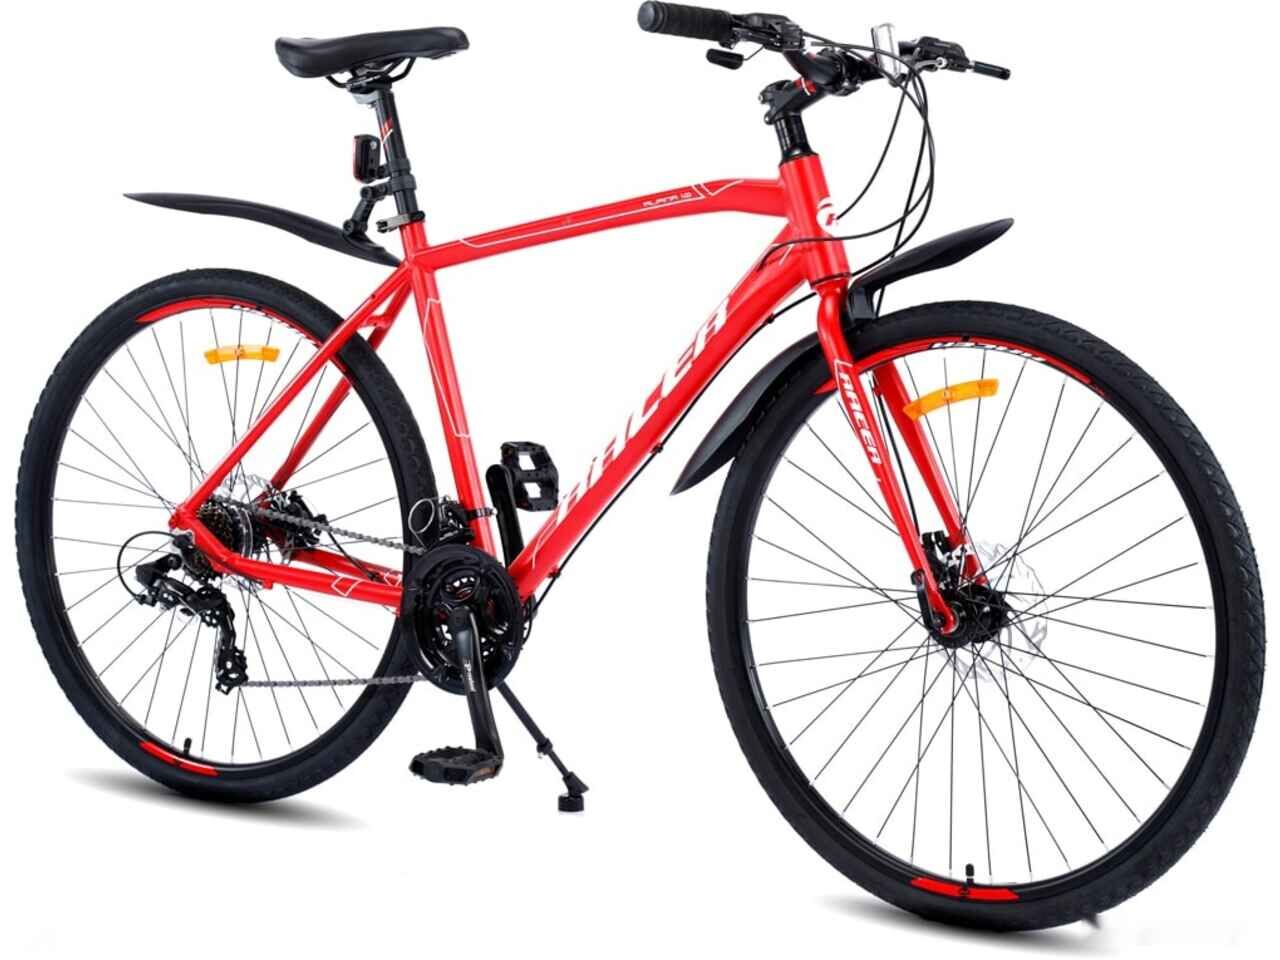 Велосипед Racer Alpina Man 1.0 2021 (красный)